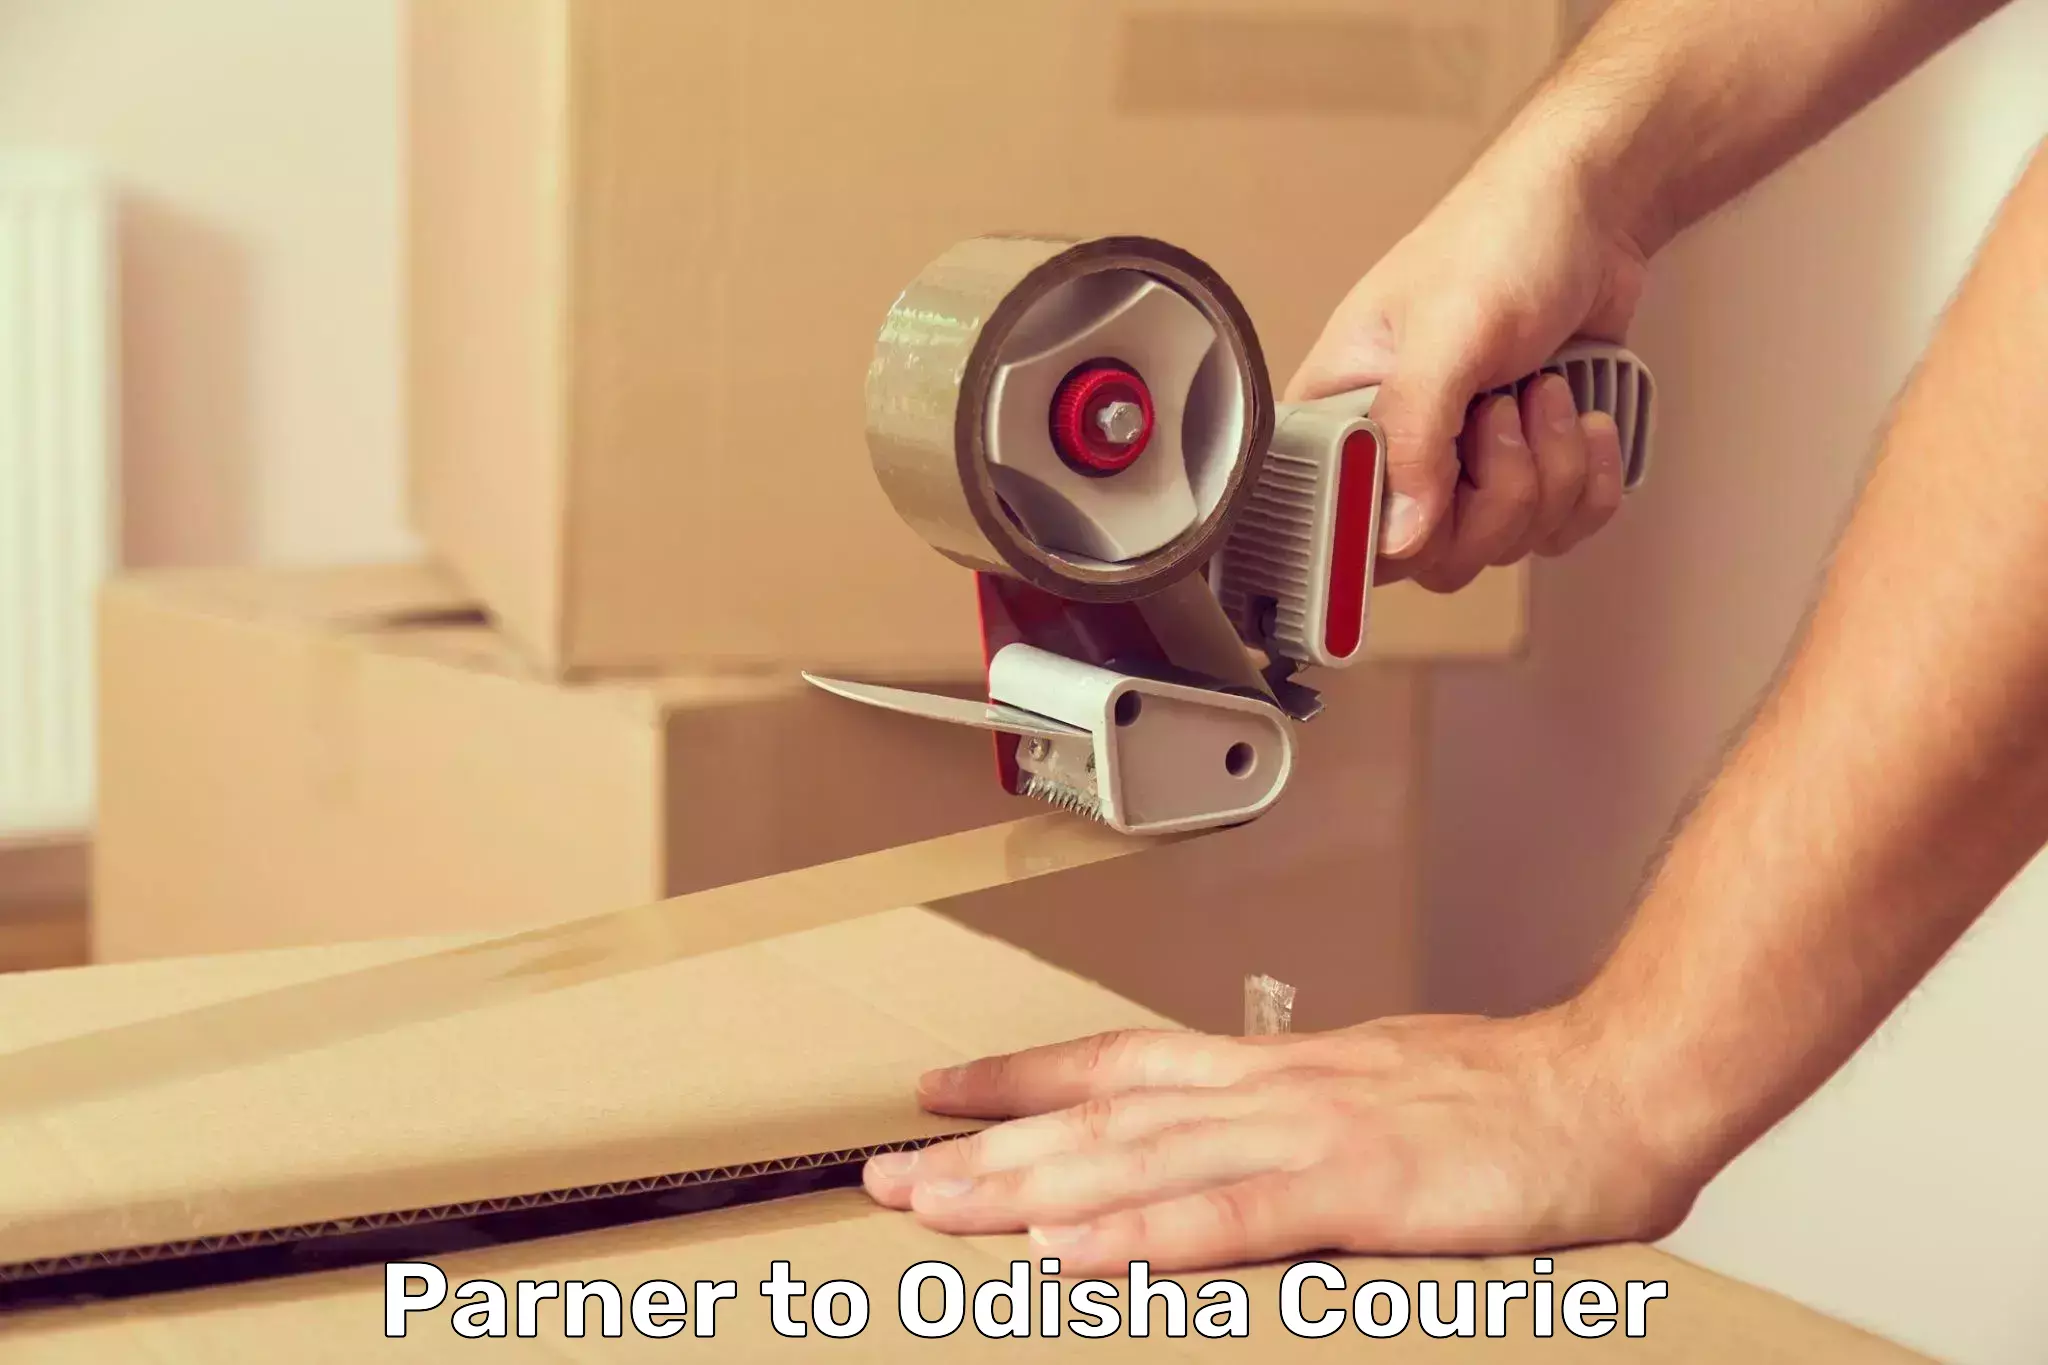 Smart parcel delivery Parner to Odisha